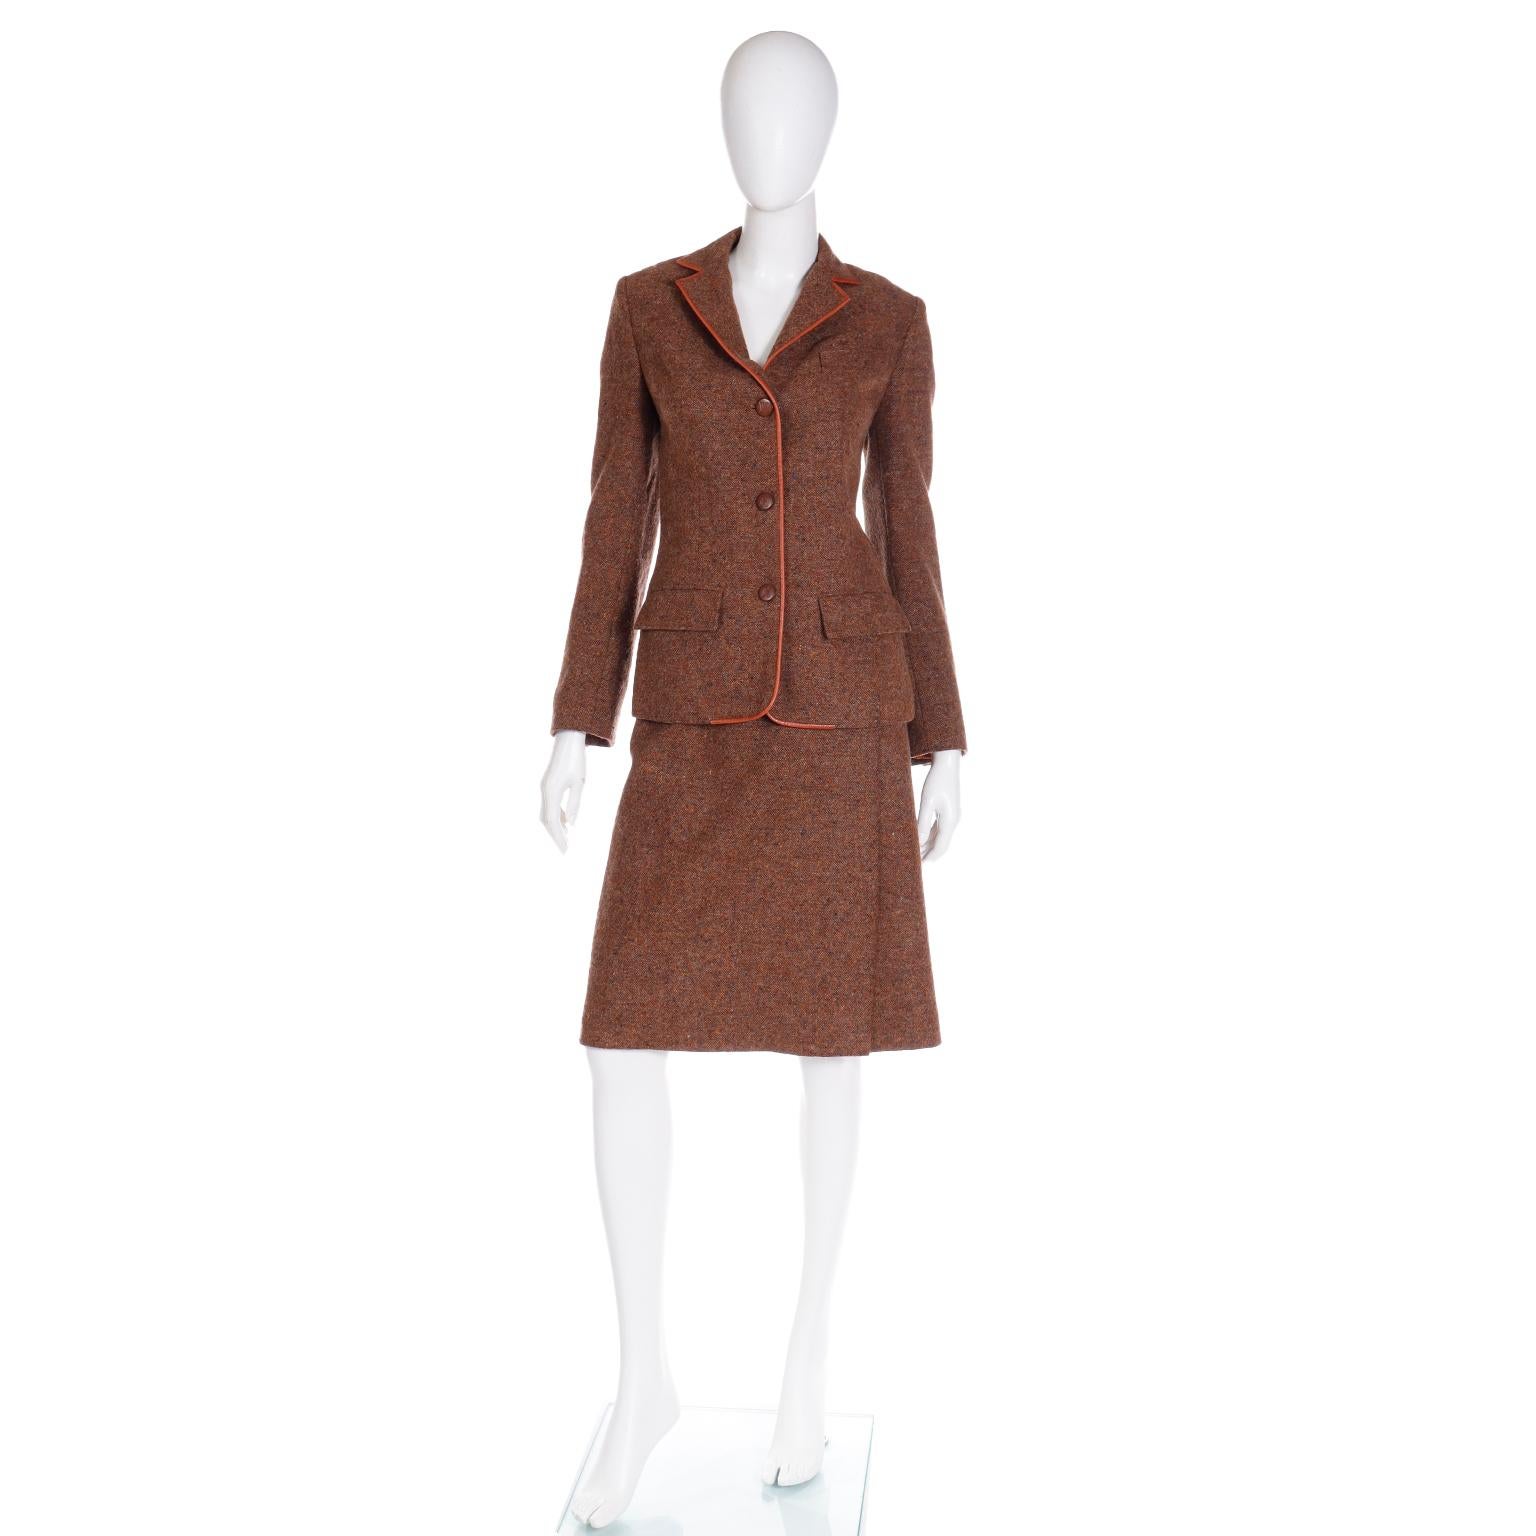 Dies ist ein Vintage 1970er Hermes braune Wolle Tweed-Jacke und Rock Anzug mit schönen Lederbesatz.	Dieses Outfit erinnert an den ursprünglichen Reiterstil von Hermes und ist sehr schön gemacht. Wir lieben die Vintage-Kleidung von Hermes, vor allem